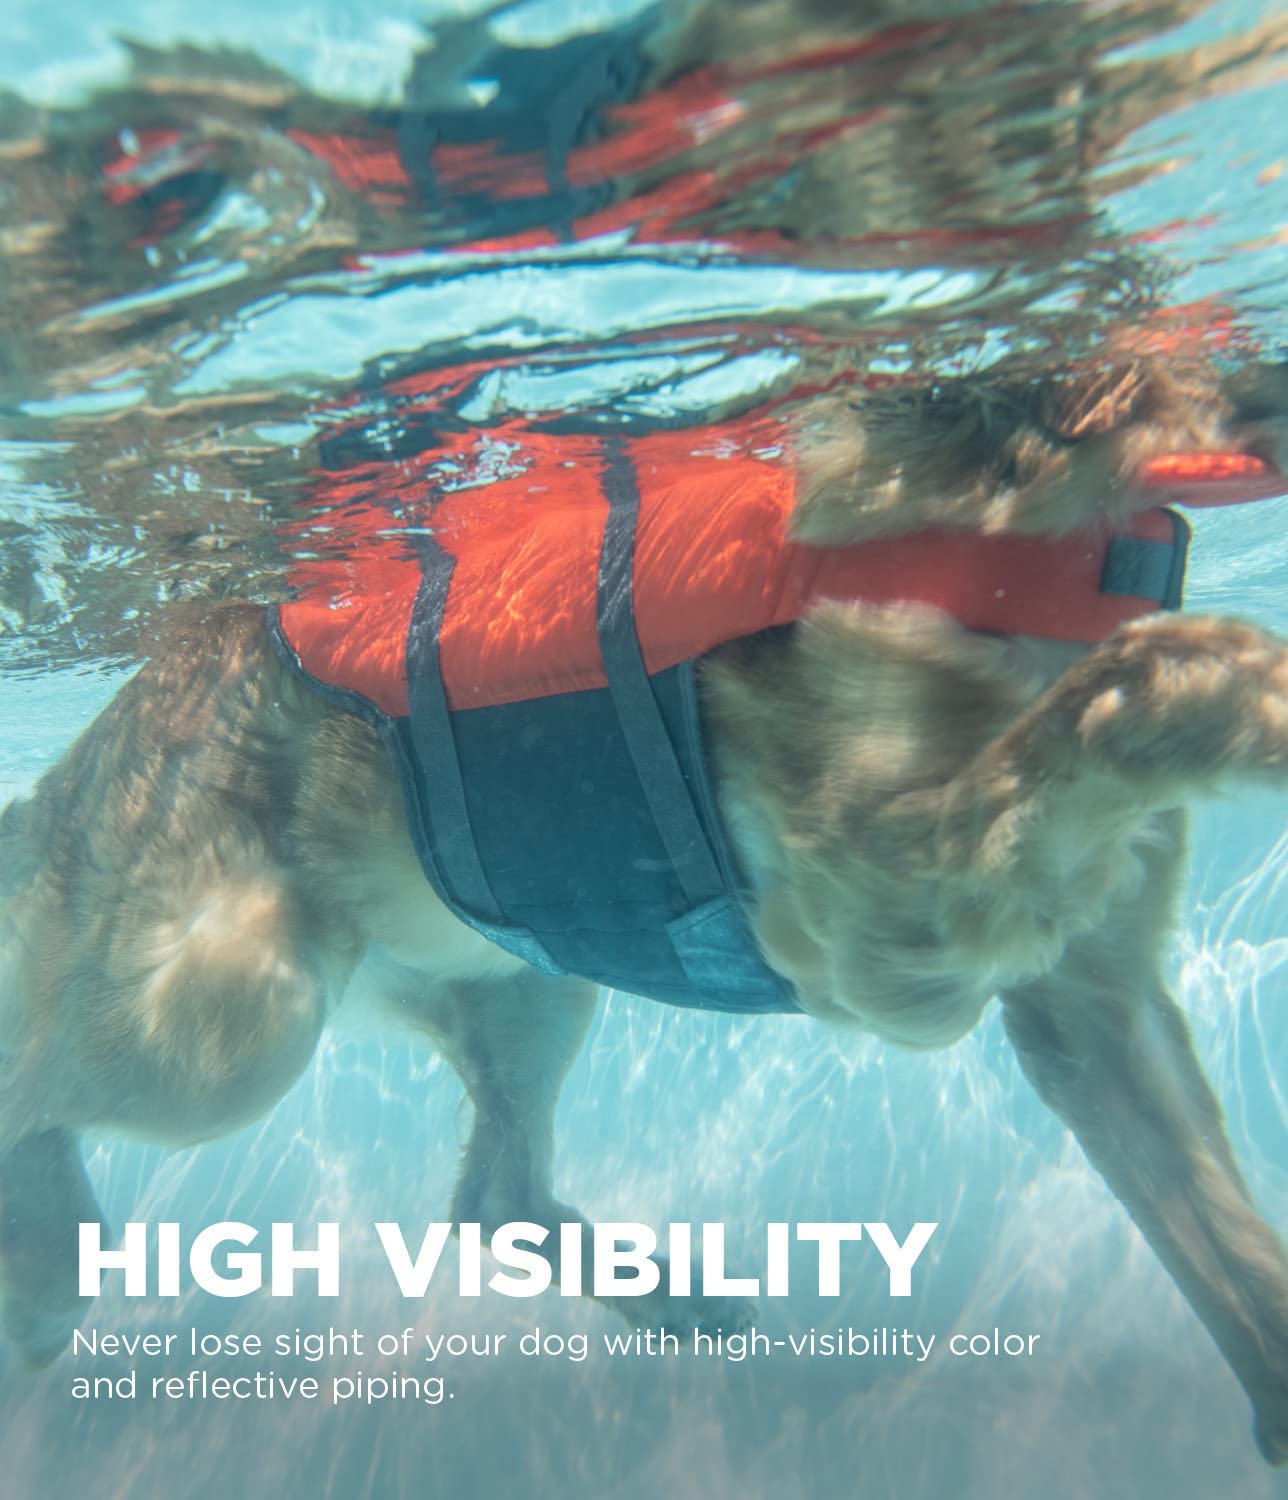  جلیقه شنا نجات سگ Granby Splash با مواد ripstop ساخته شده است که حداکثر شناوری را در آب بدون محدودیت حرکت در خشکی ایجاد می کند